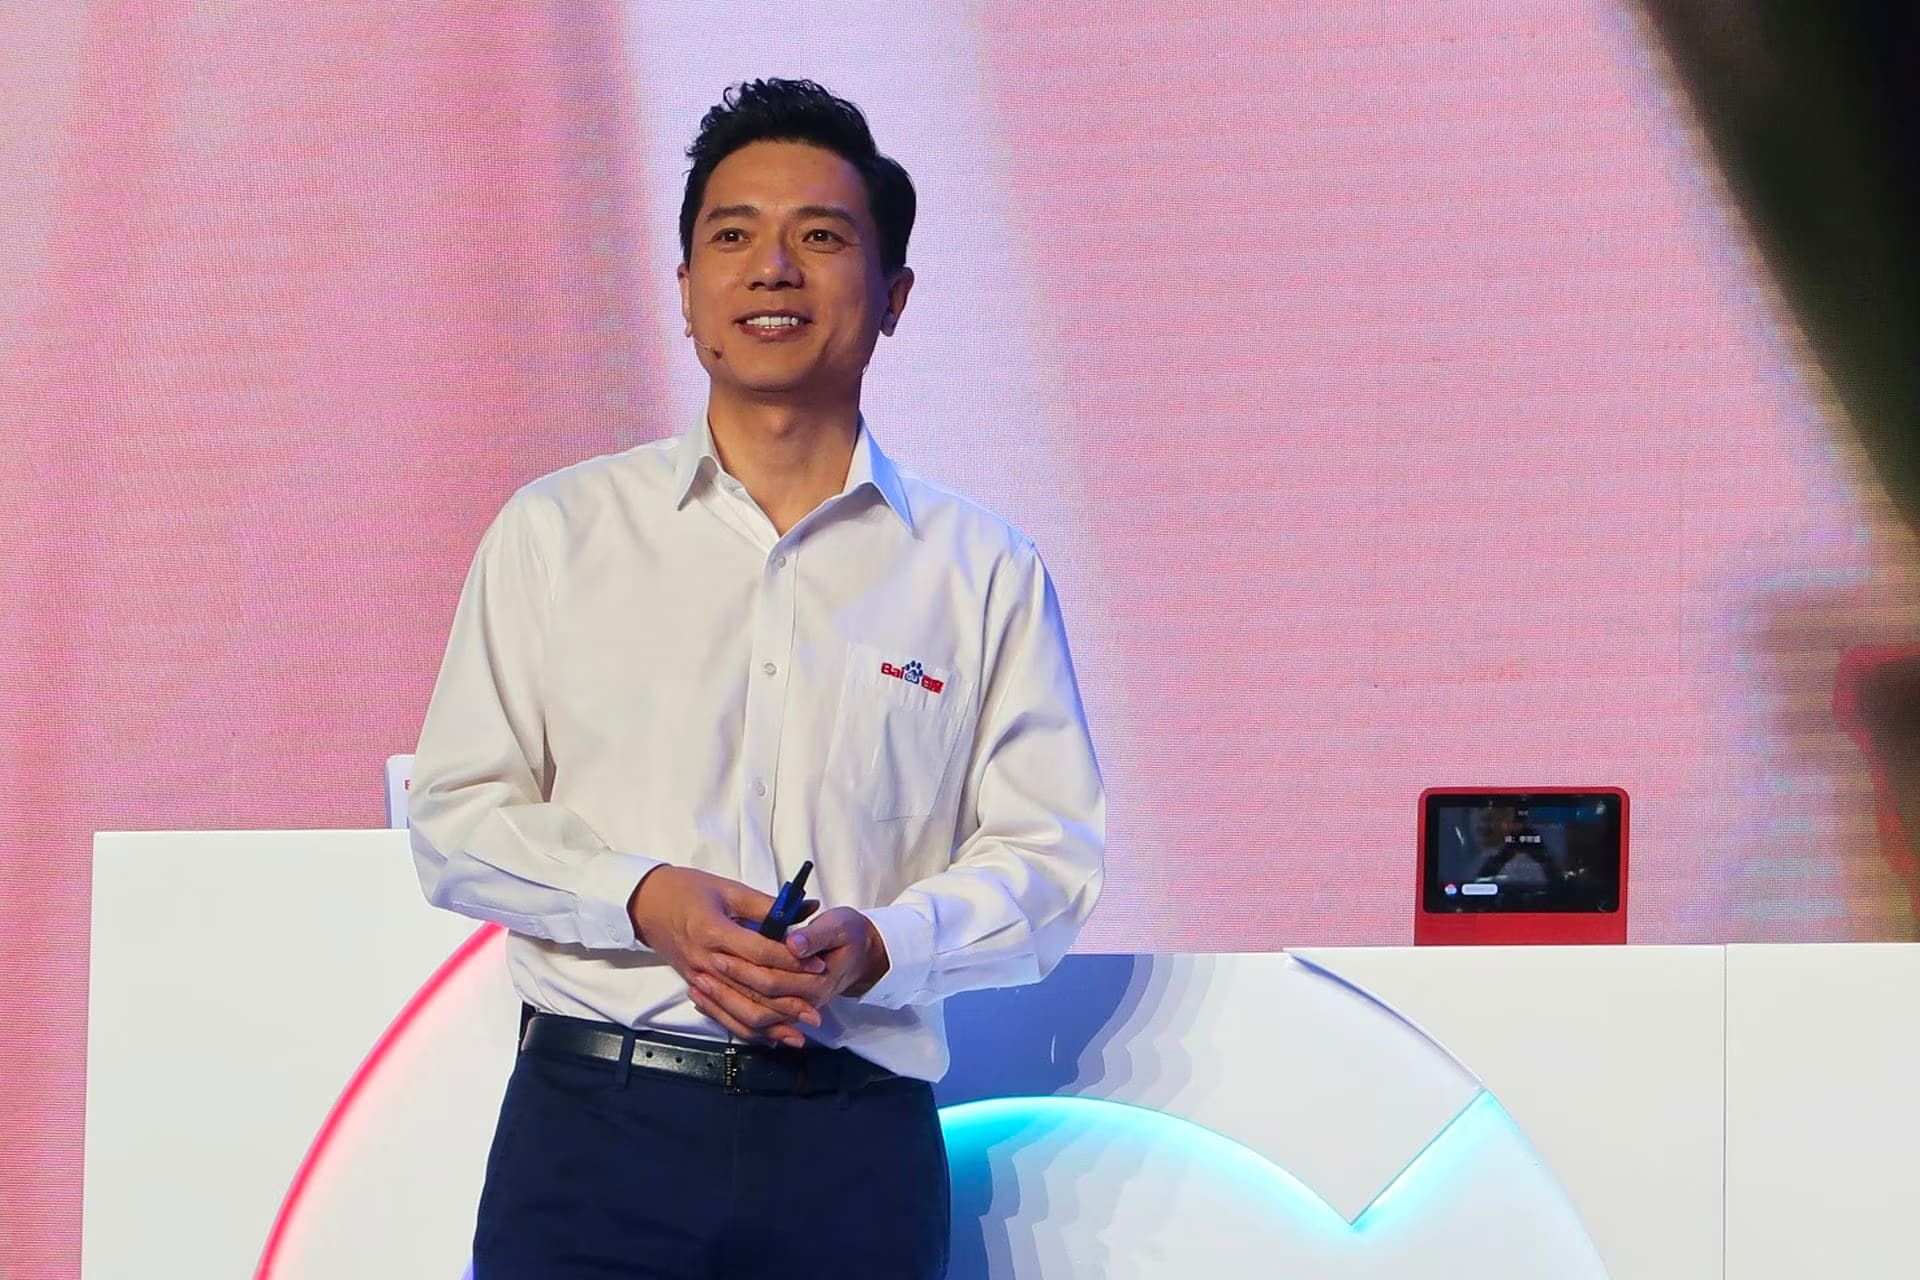 رابین لی مدیرعامل بایدو Baidu با پیراهن سفید و شلوار مشکی